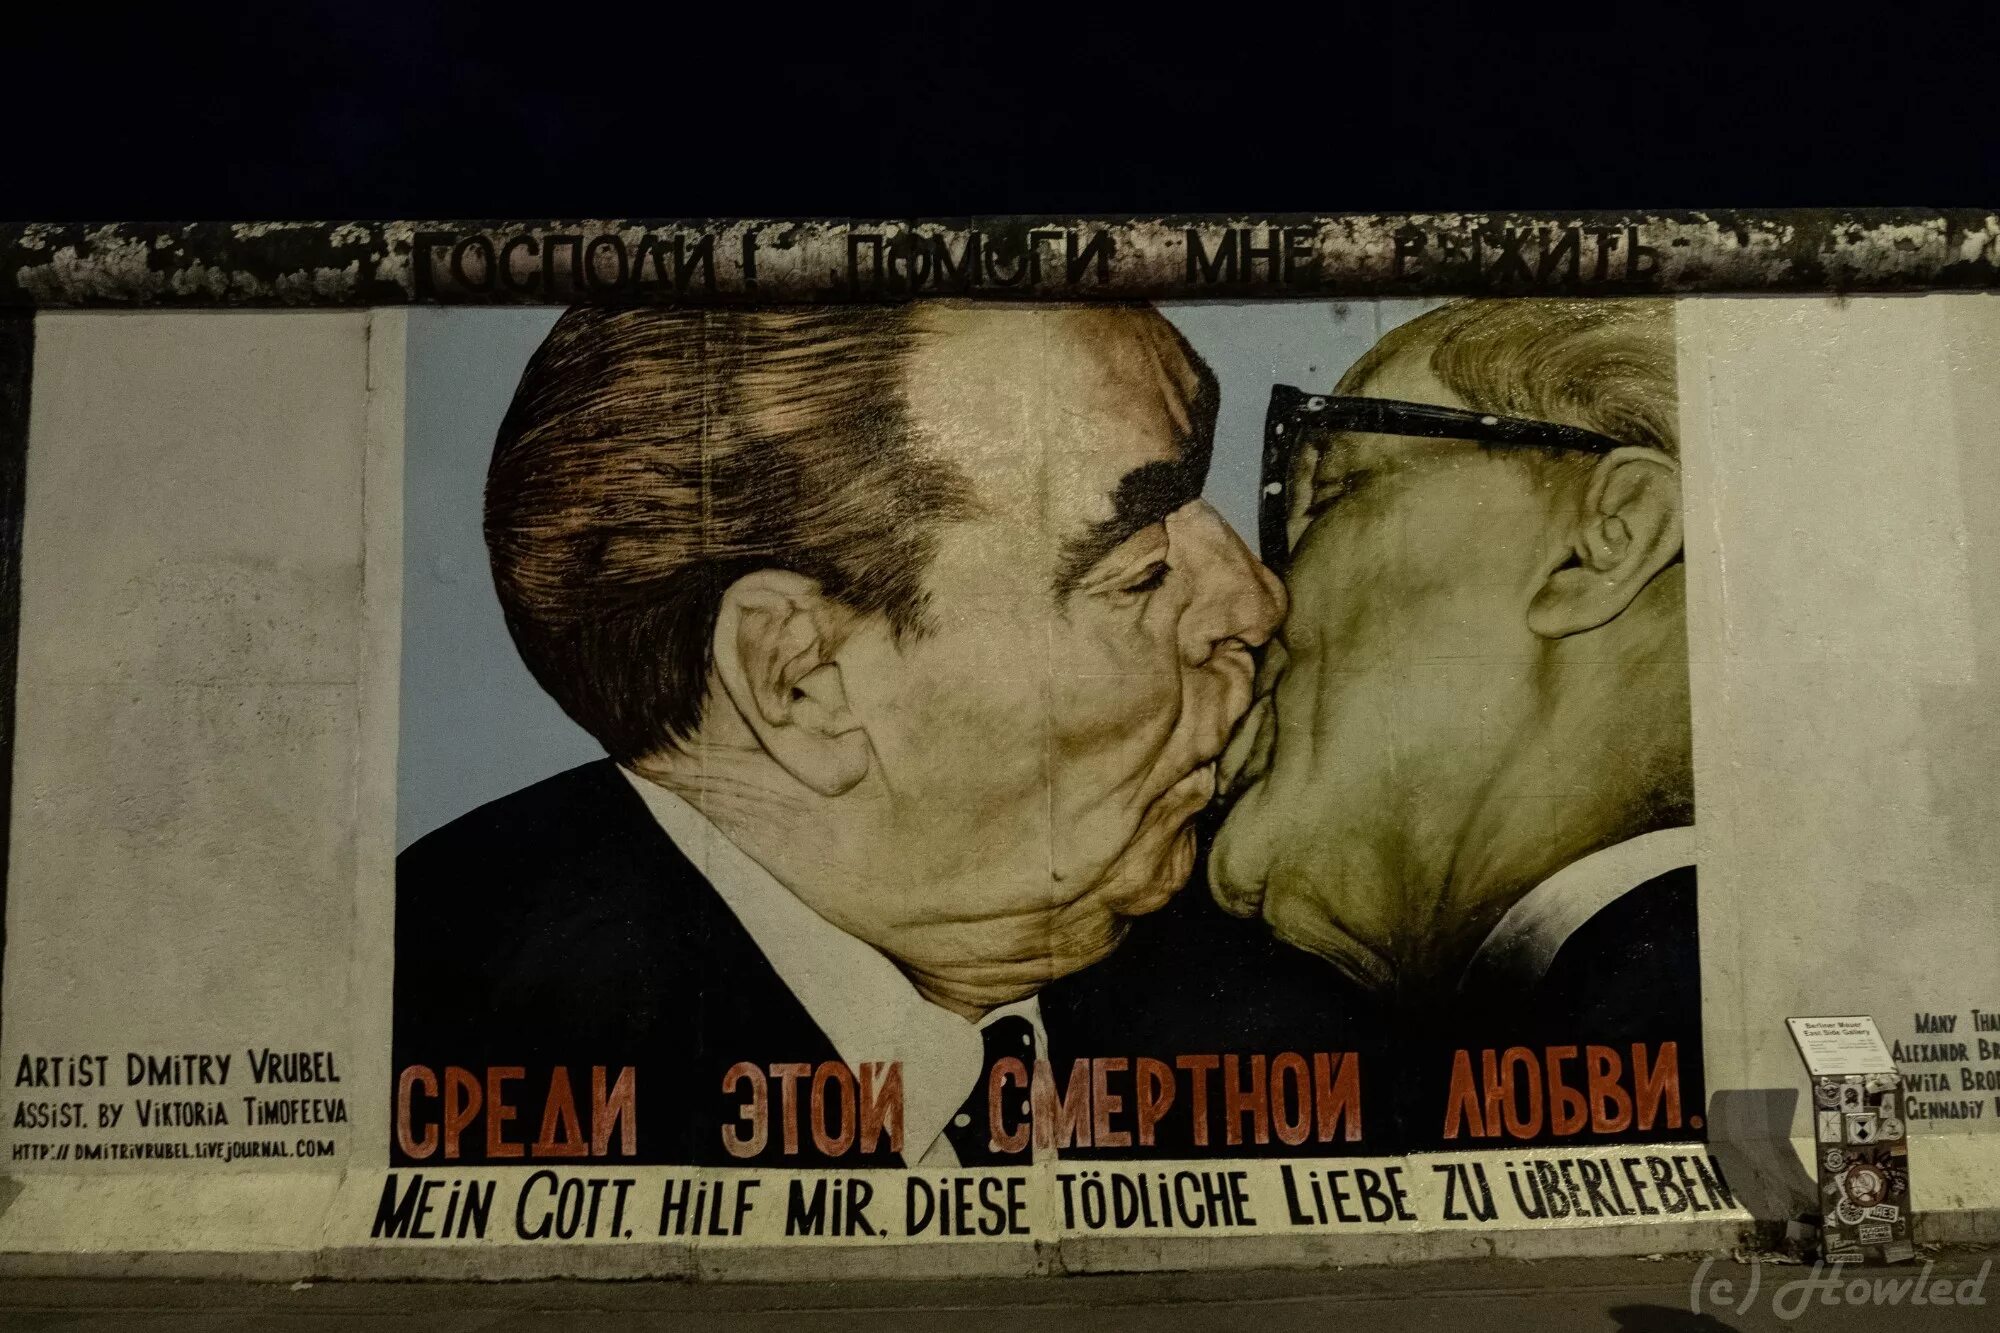 Брежнев поцелуй Берлинская стена. Брежнев и Хонеккер стена. Поцелуй Брежнева и Хонеккера на Берлинской стене. Господи помоги мне выжить среди этой